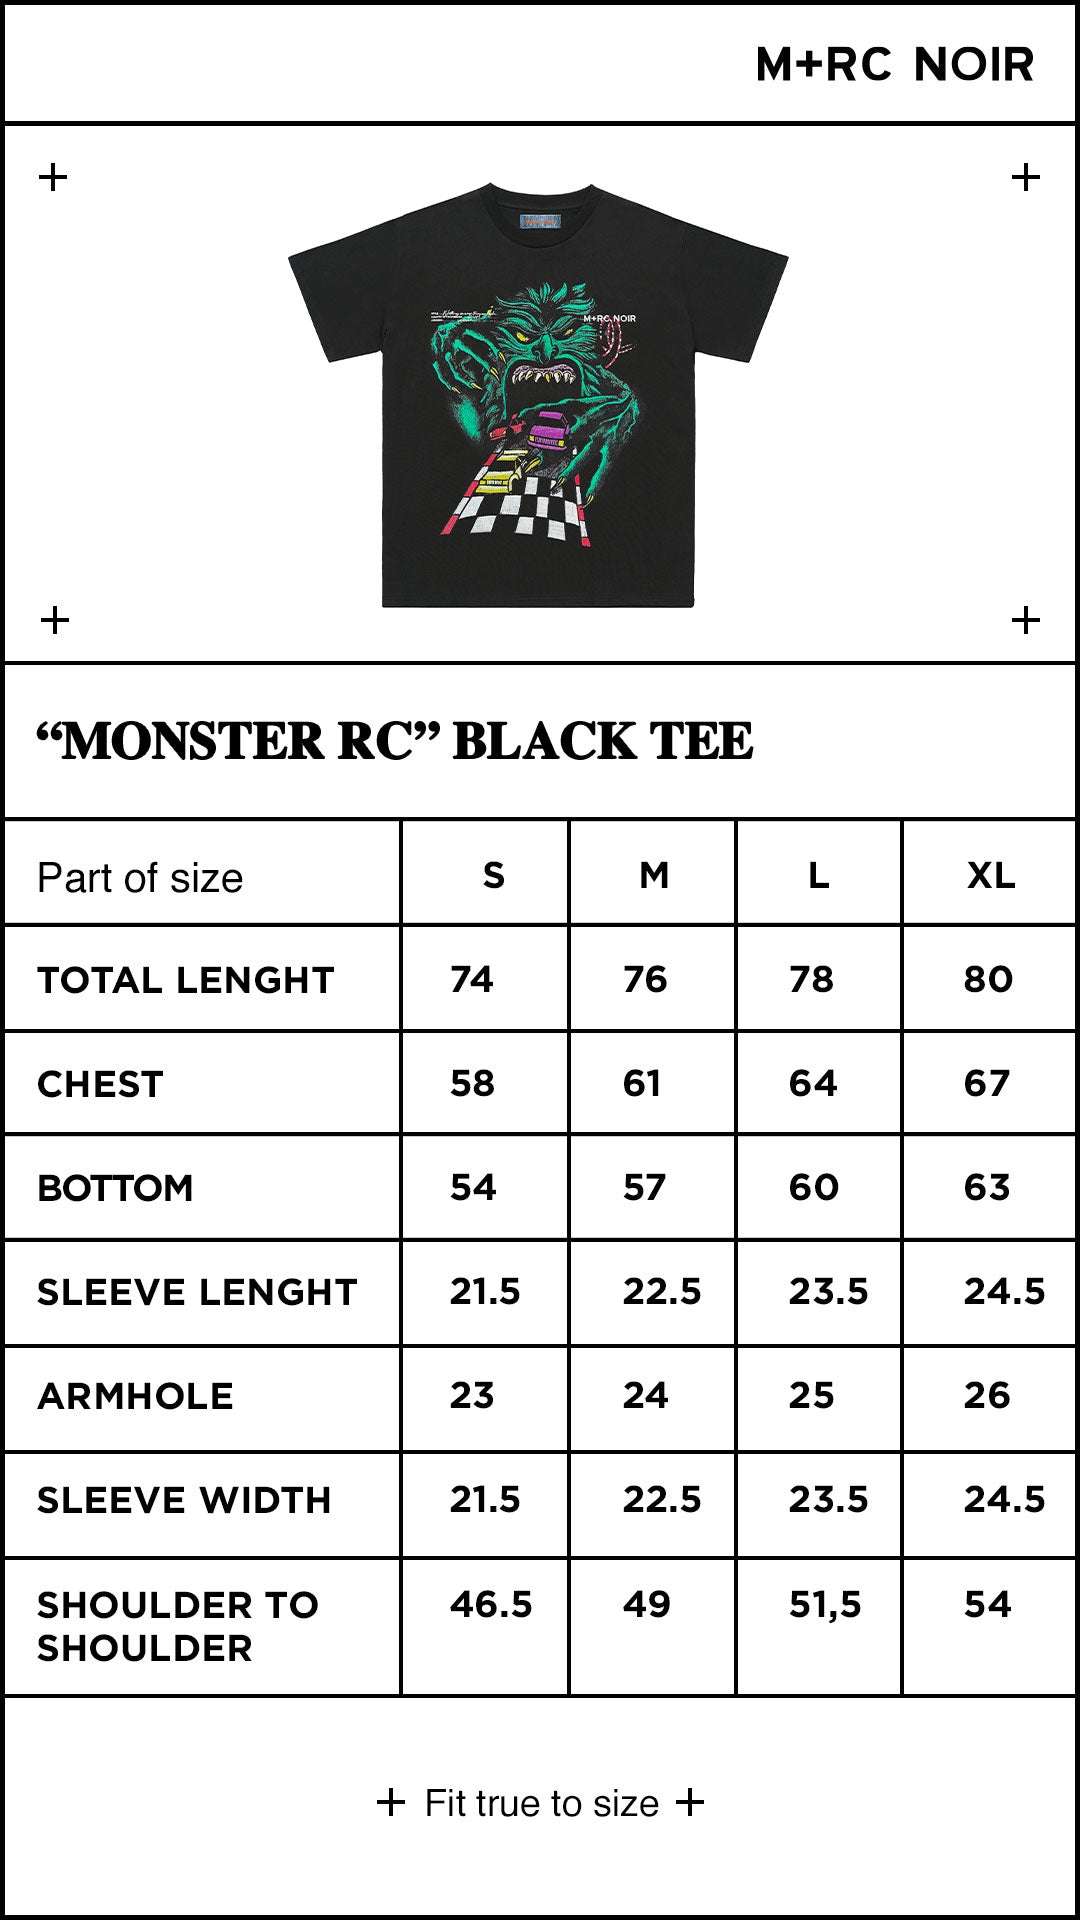 "Monster RC" Black tee - mrcnoir